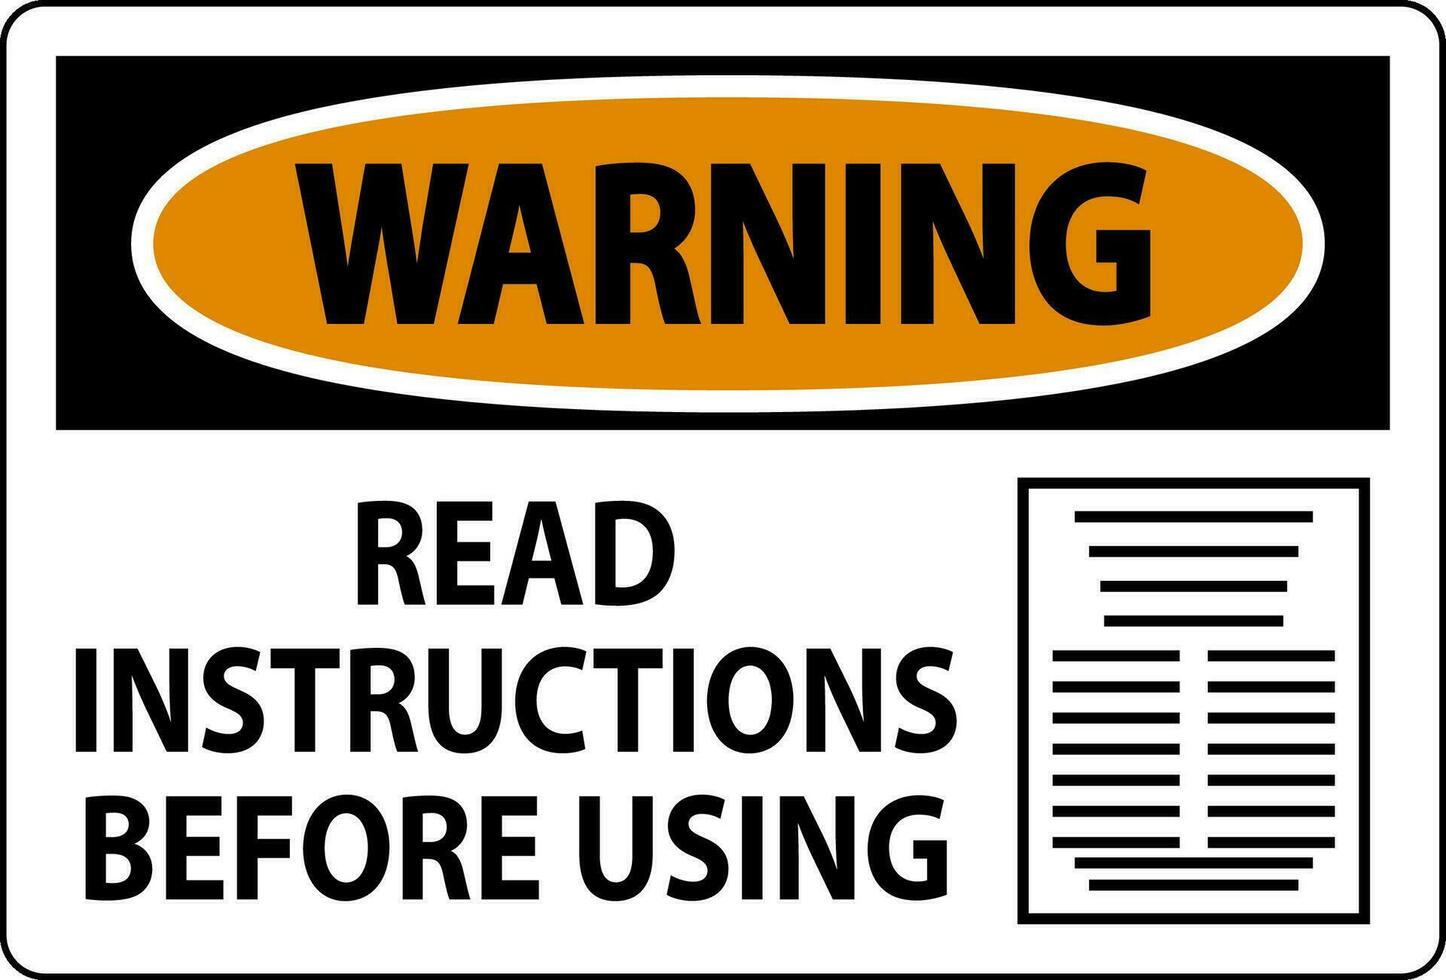 avertissement machine signe lis instructions avant en utilisant vecteur